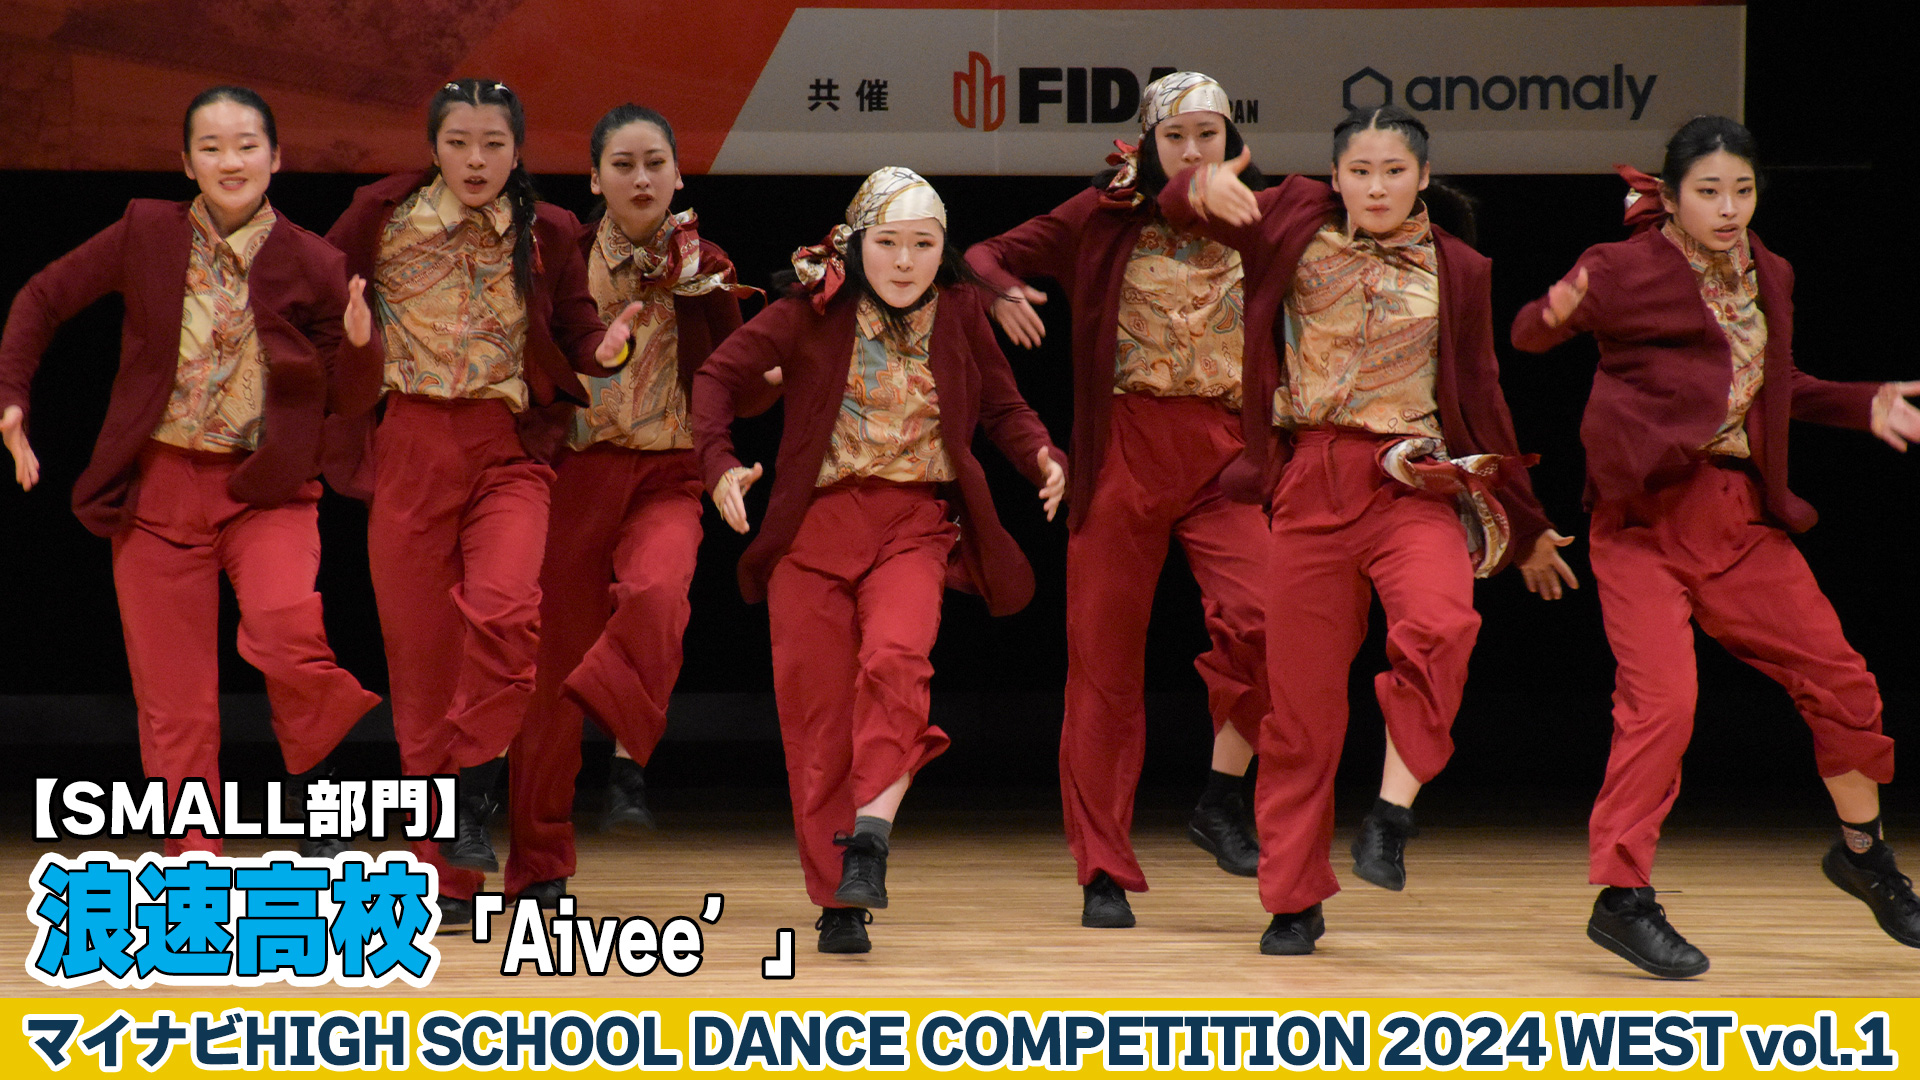 【動画】浪速高校「Aivee’」がSMALL部門で演技を披露！＜マイナビHIGH SCHOOL DANCE COMPETITION 2024 WEST vol.2＞